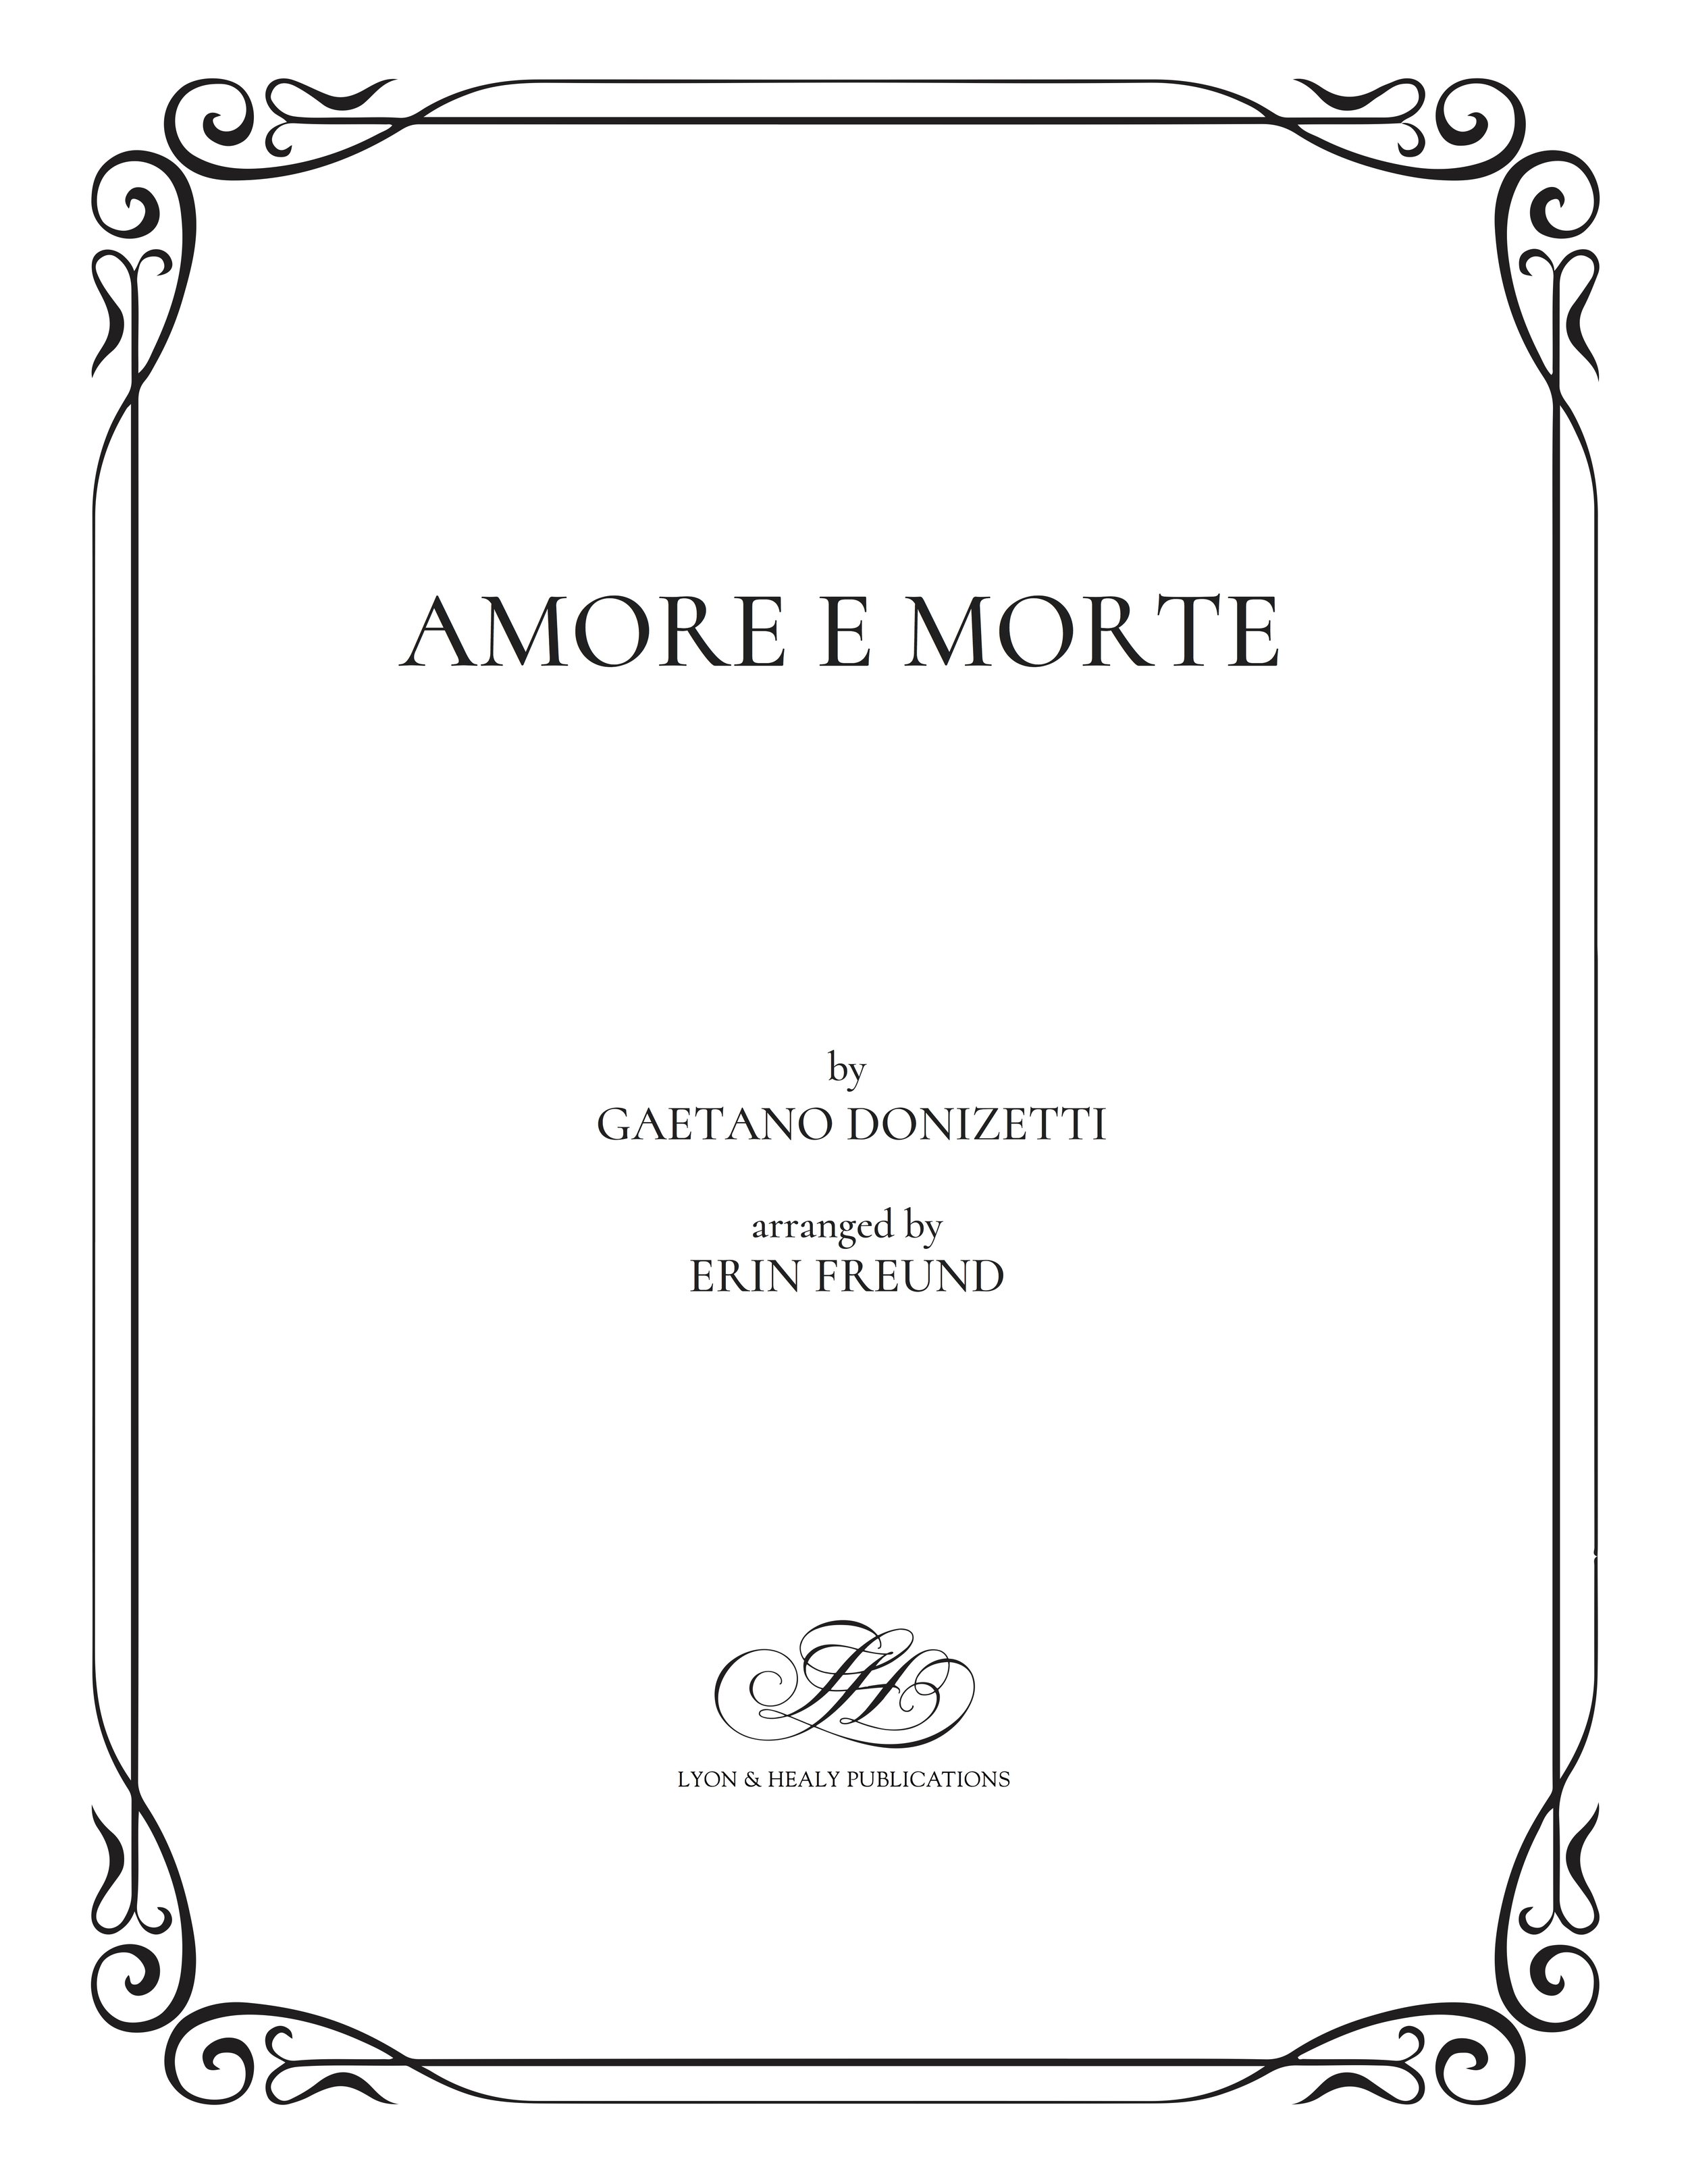 Amore e morte - Donizetti-Freund cover.jpg